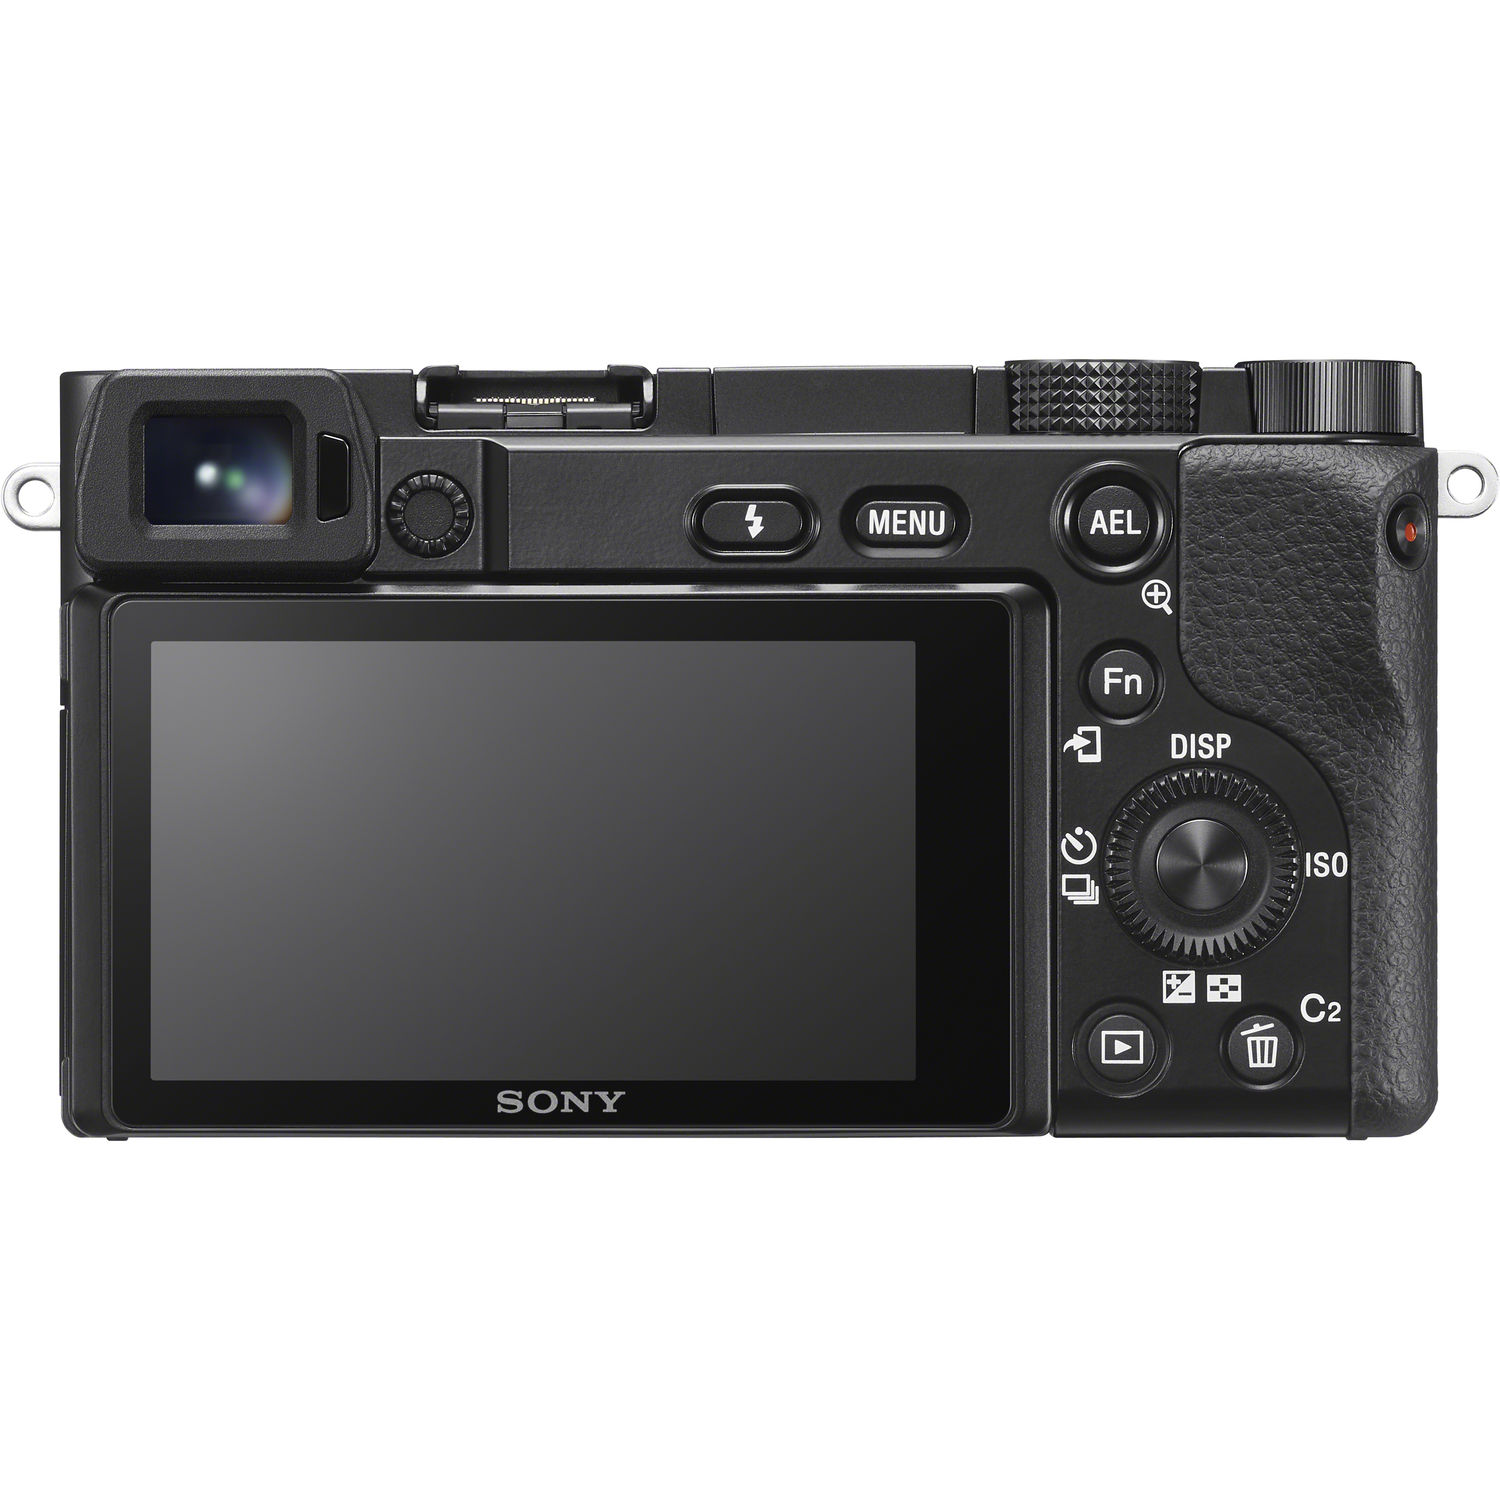 Sony A6100 + 16-50mm f/3.5-5-6 Power Zoom OSS